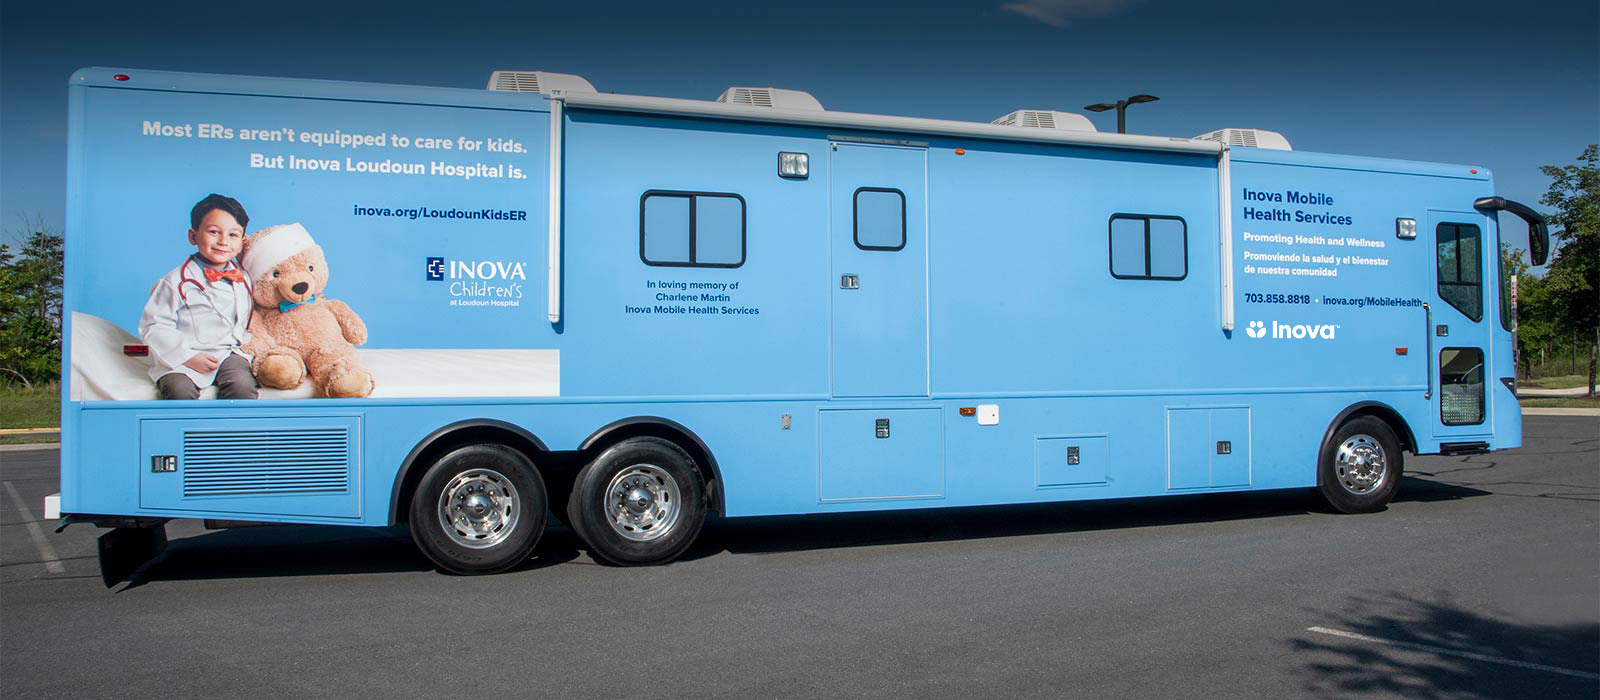 Inova Loudoun Hospital Mobile Health Services bus